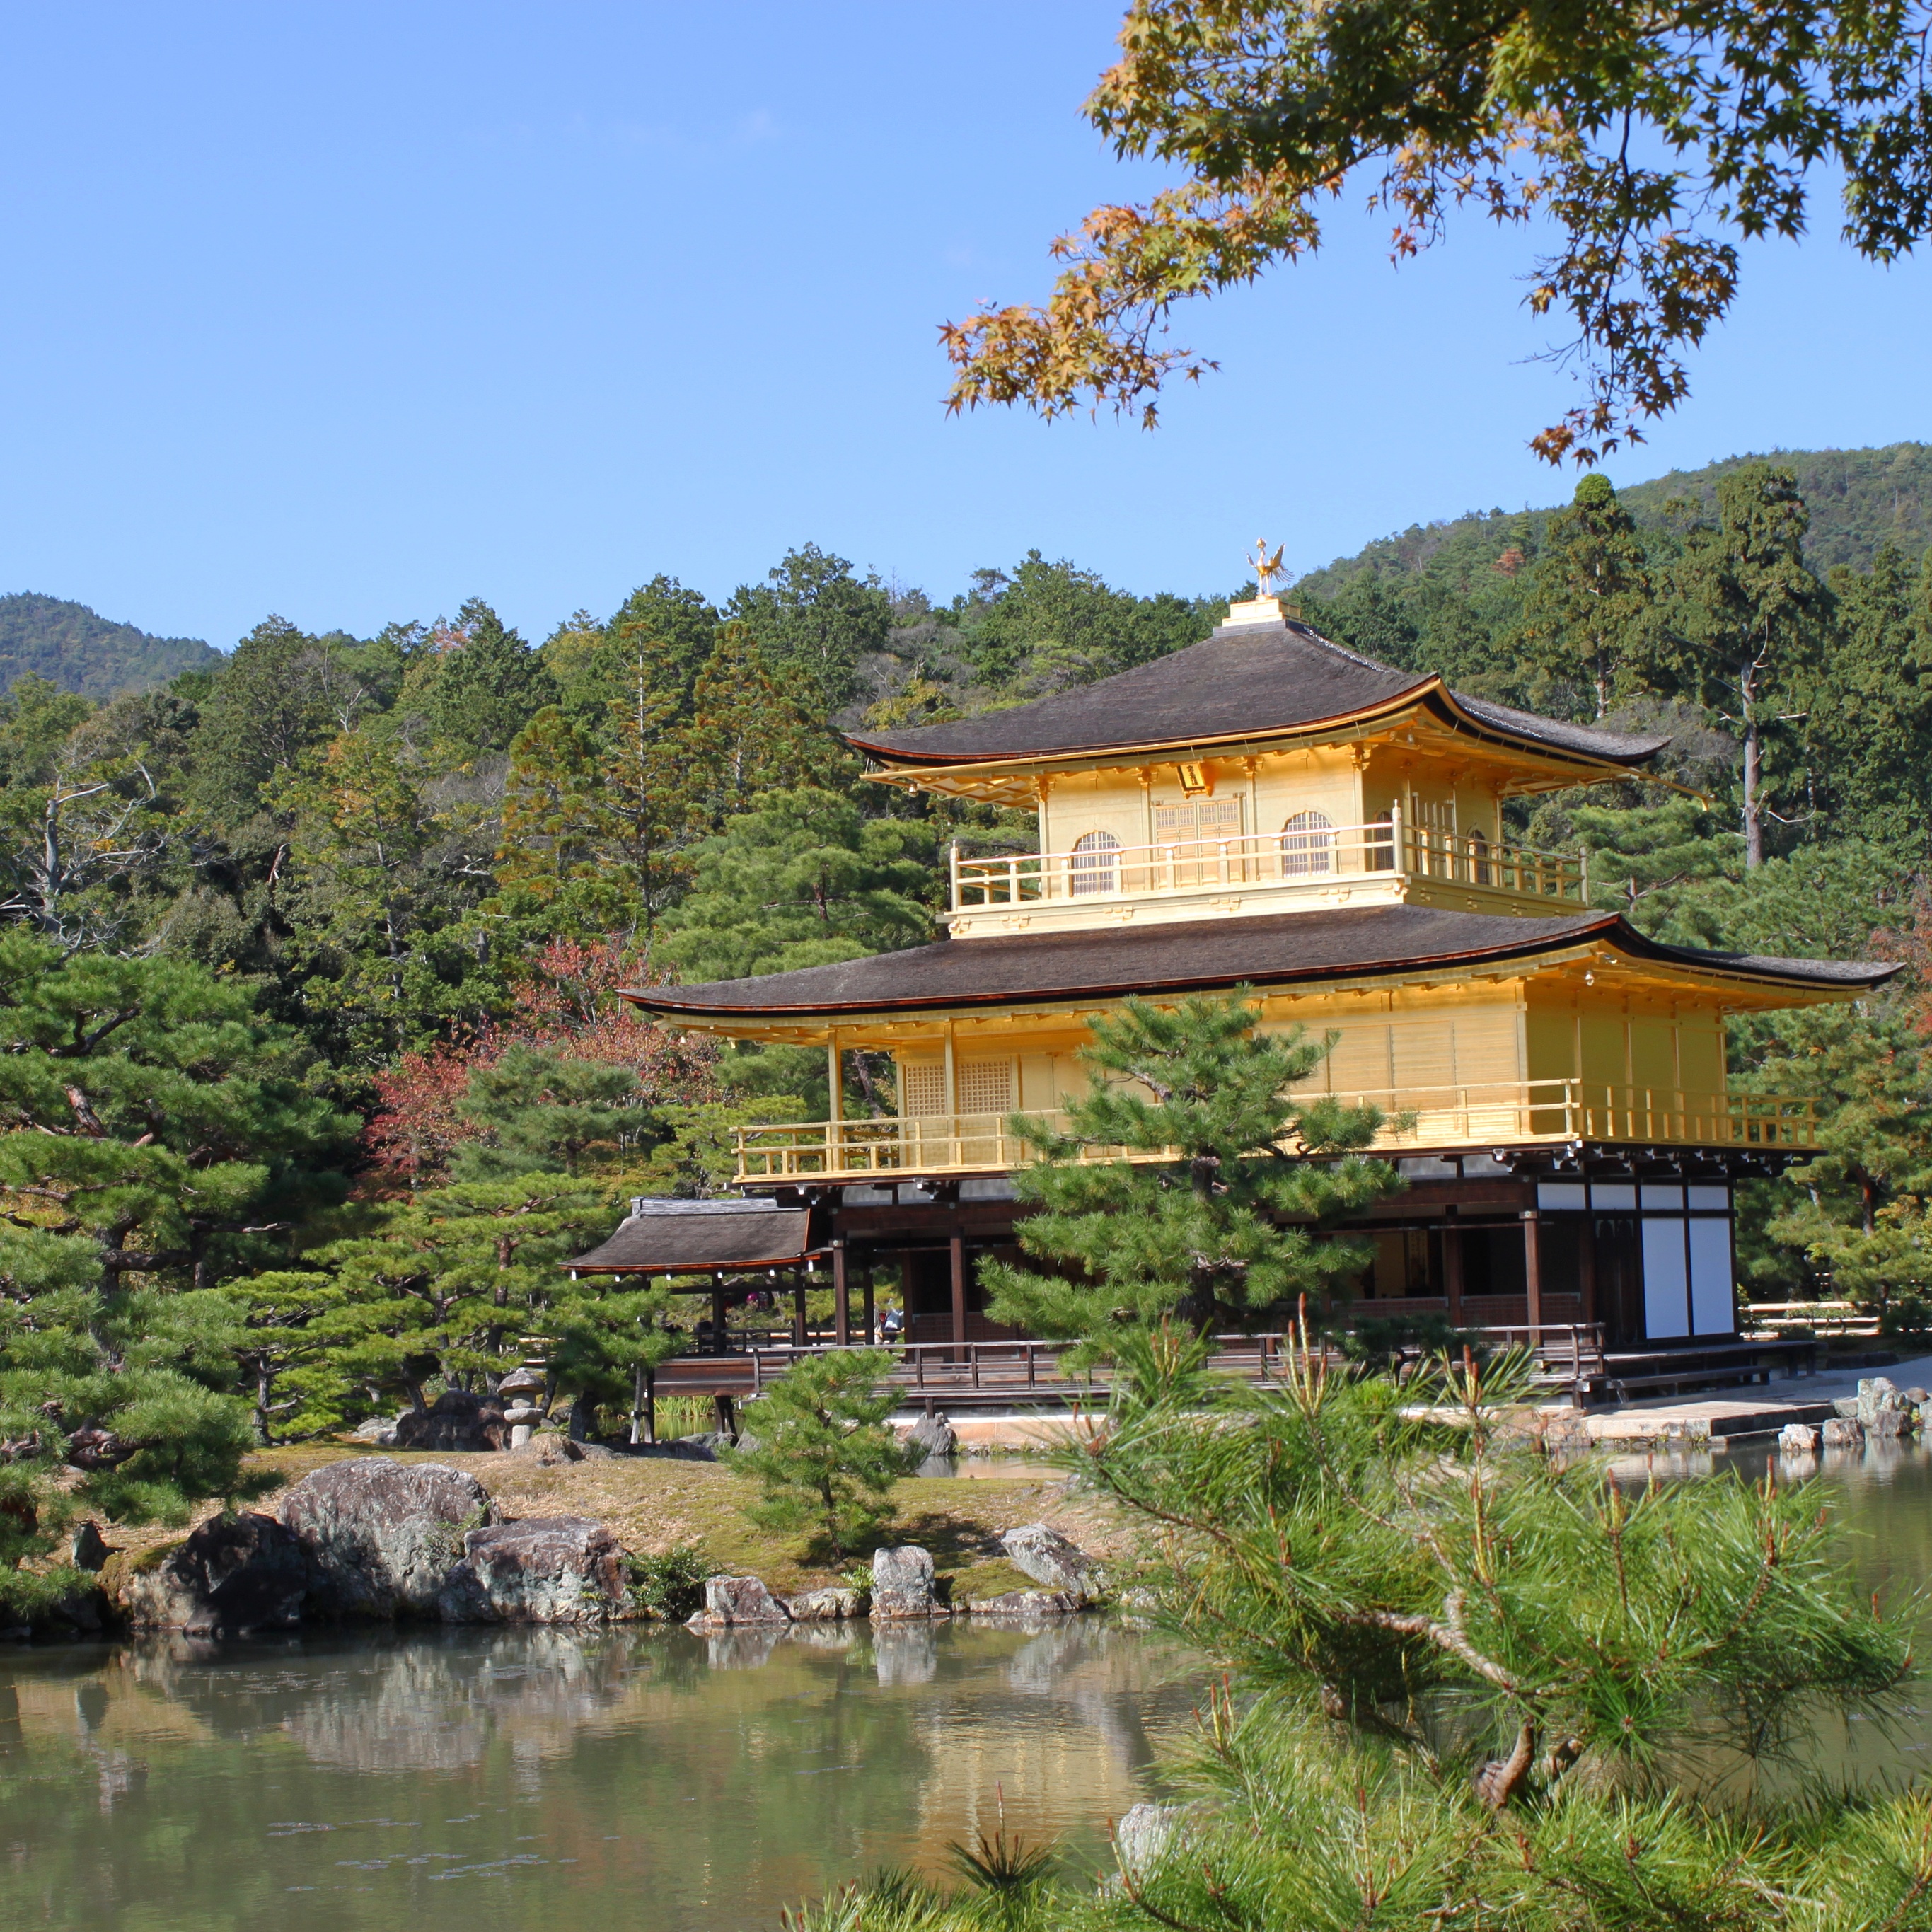 Kinkaku-ji Temple (The Golden Pavilion)